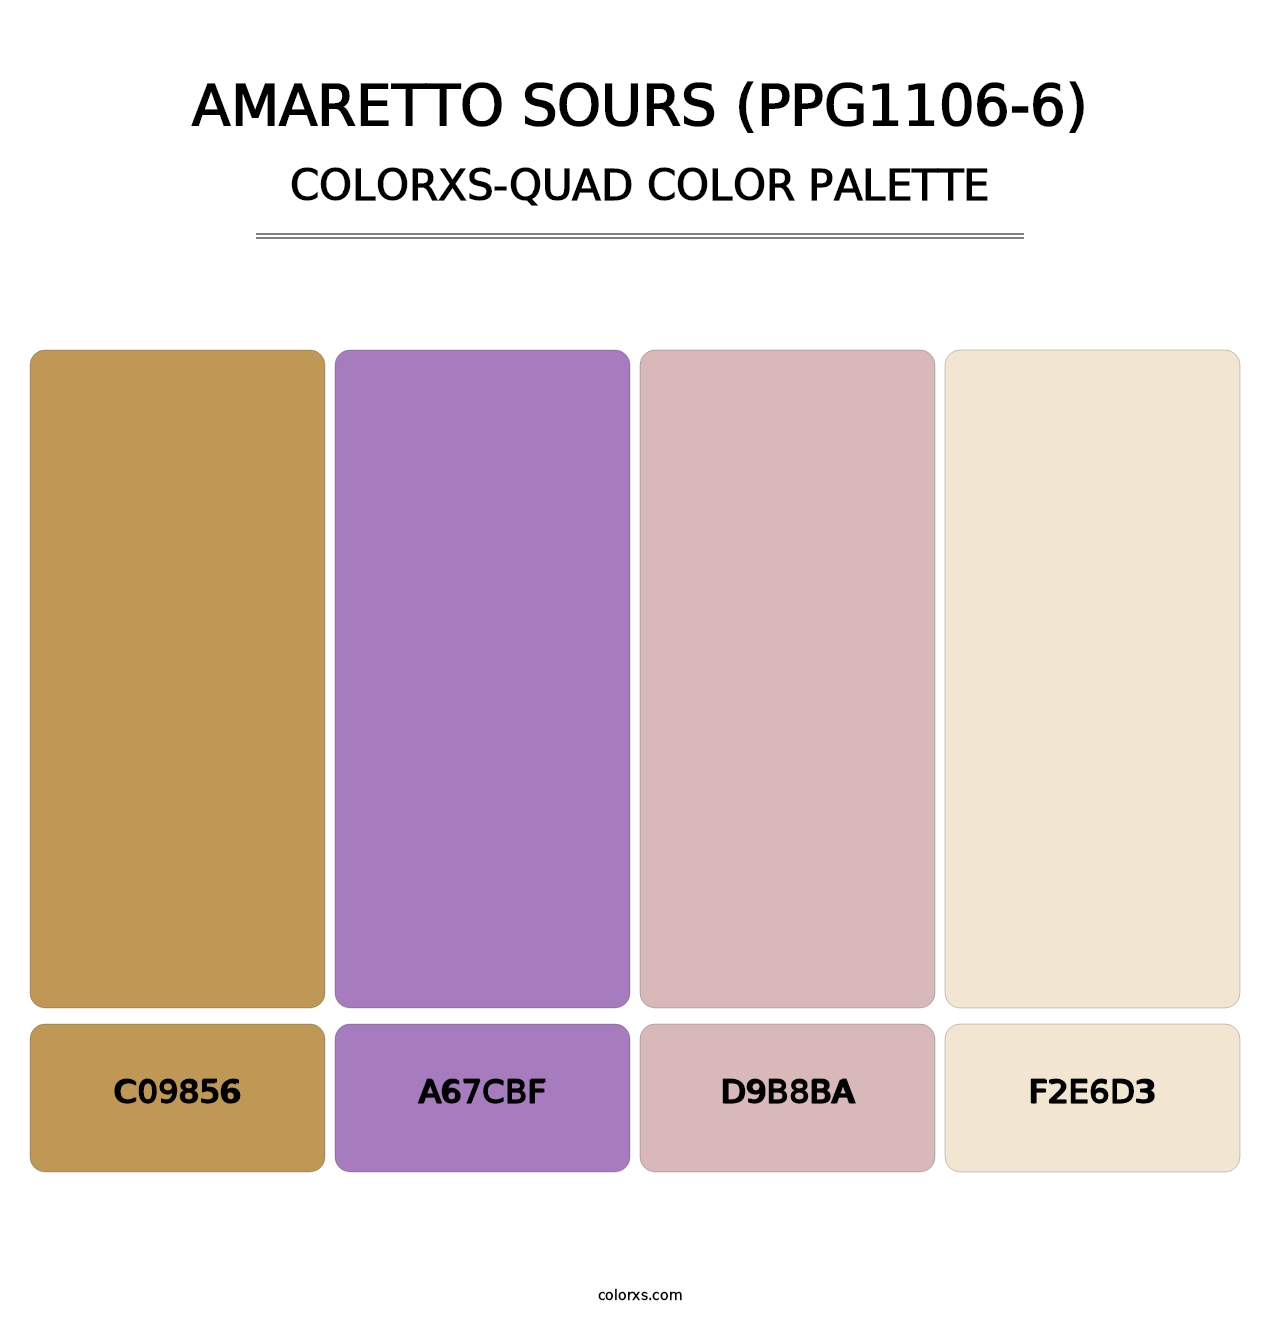 Amaretto Sours (PPG1106-6) - Colorxs Quad Palette